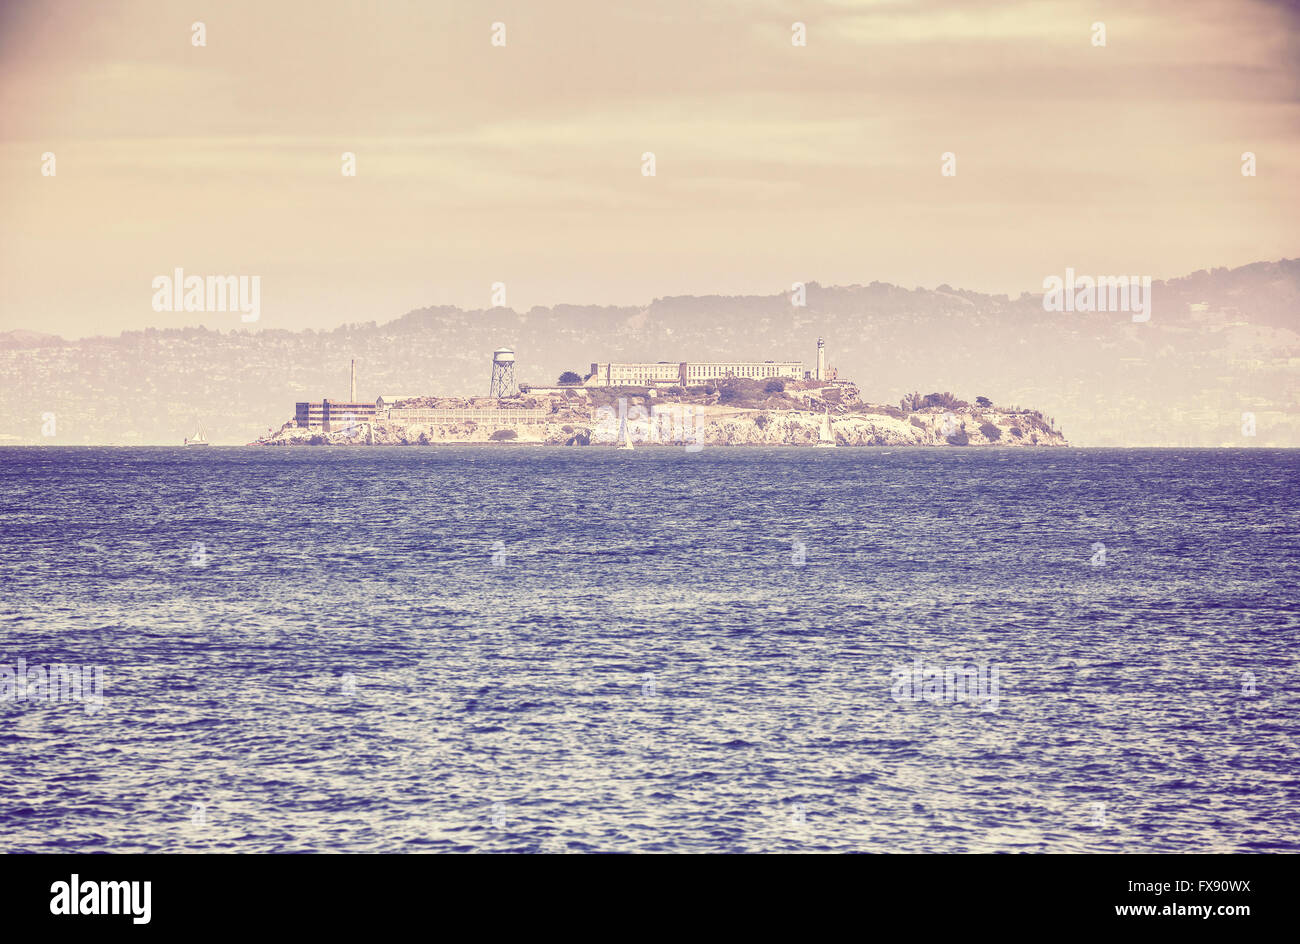 Vieux film rétro photo stylisée de l'île d'Alcatraz, San Francisco, USA. Banque D'Images